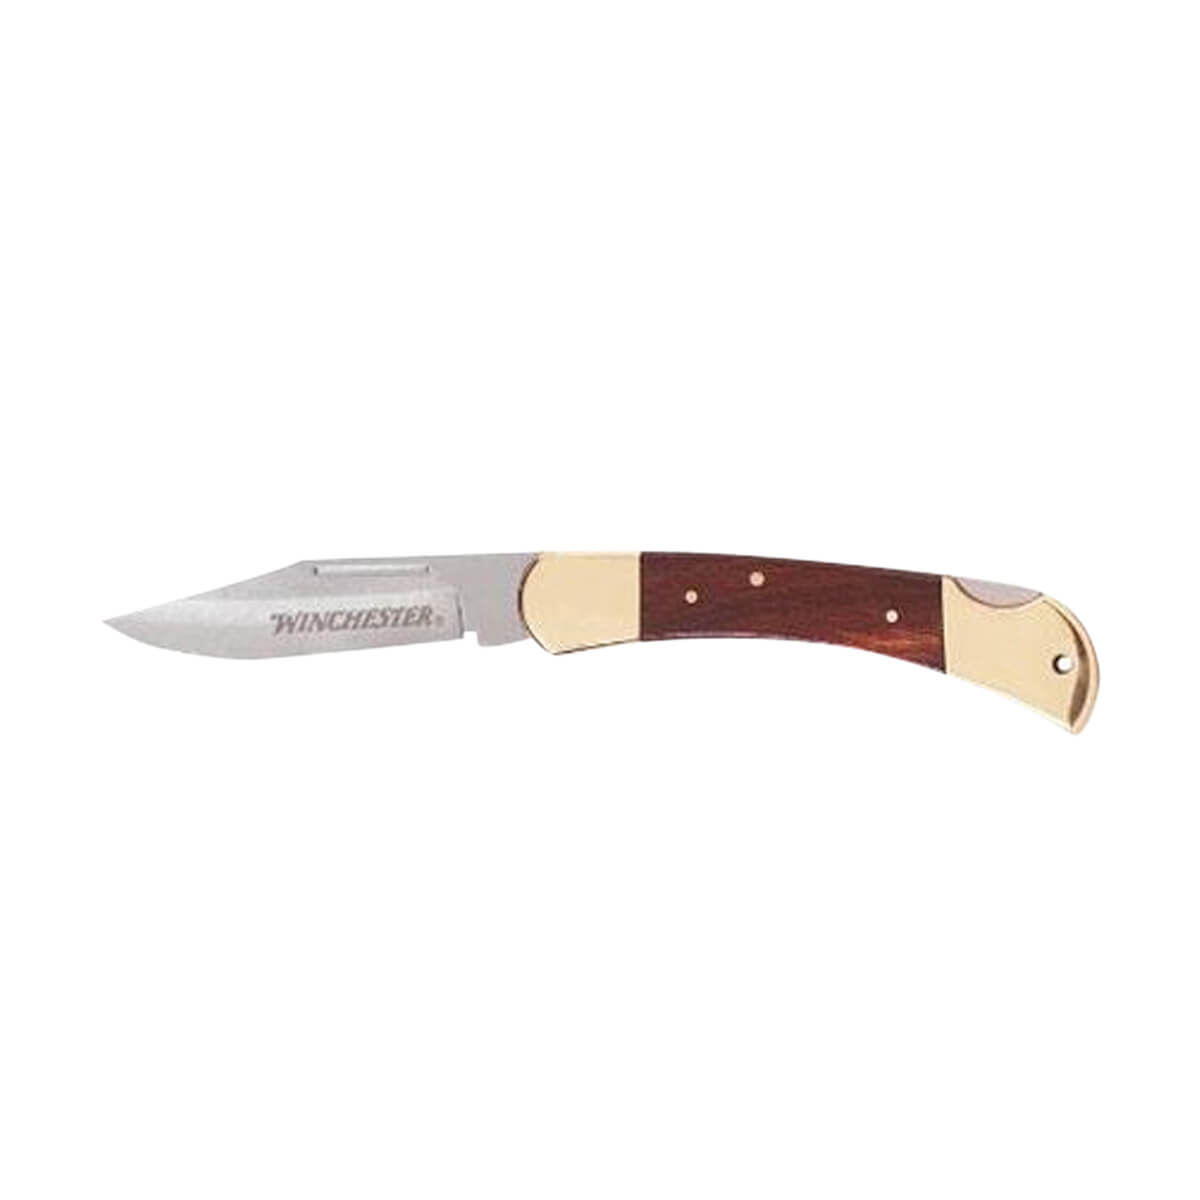 Winchester Brass & Wood Folder Knife - 3.5-in